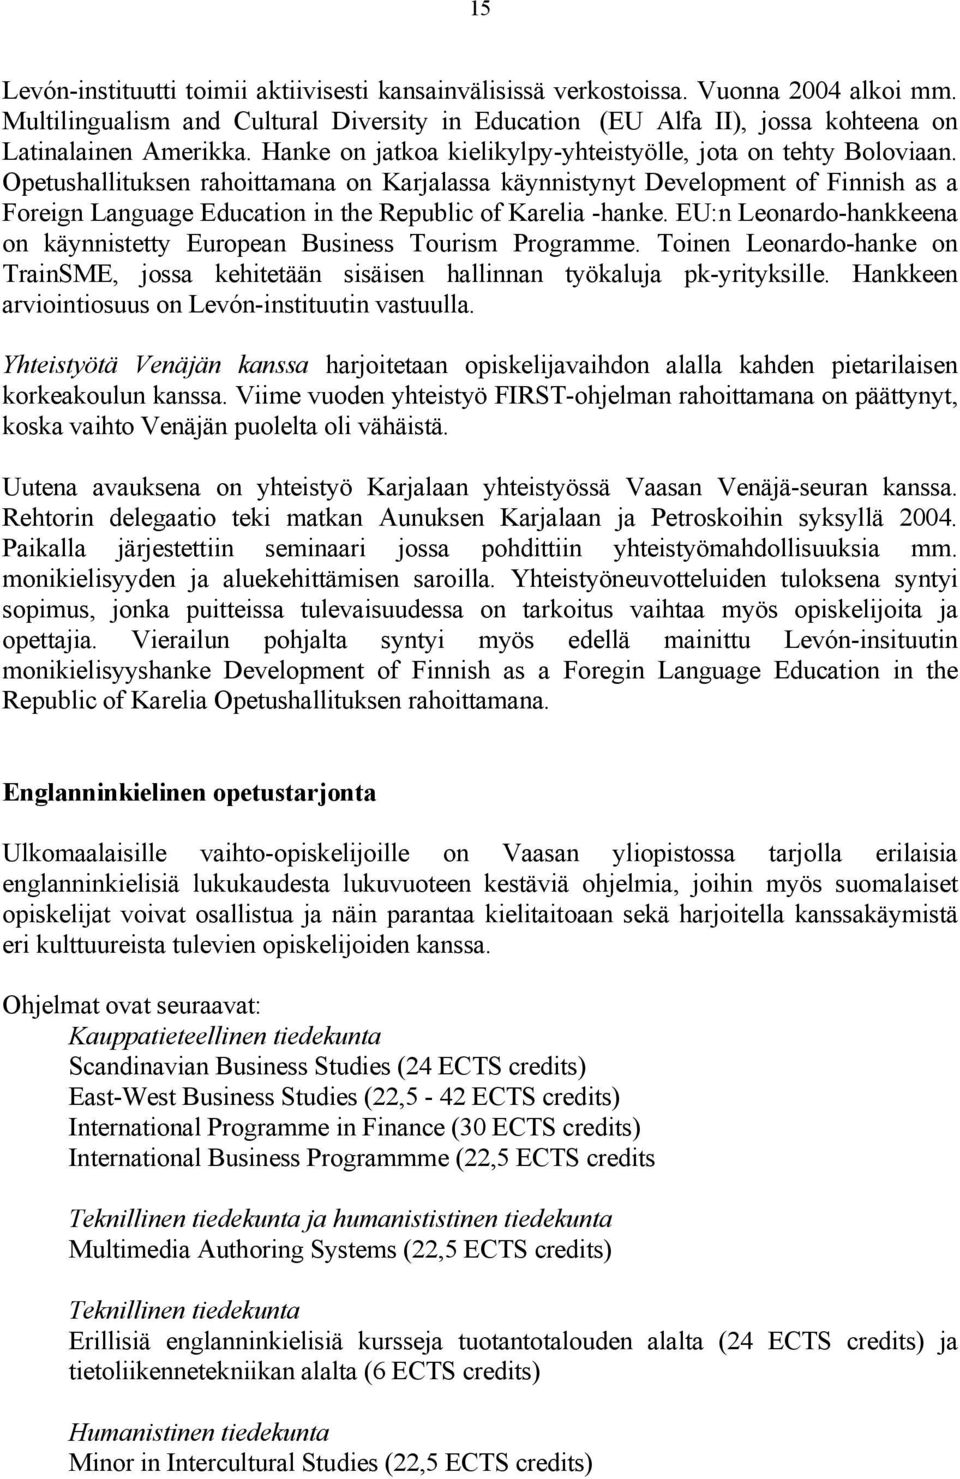 Opetushallituksen rahoittamana on Karjalassa käynnistynyt Development of Finnish as a Foreign Language Education in the Republic of Karelia -hanke.